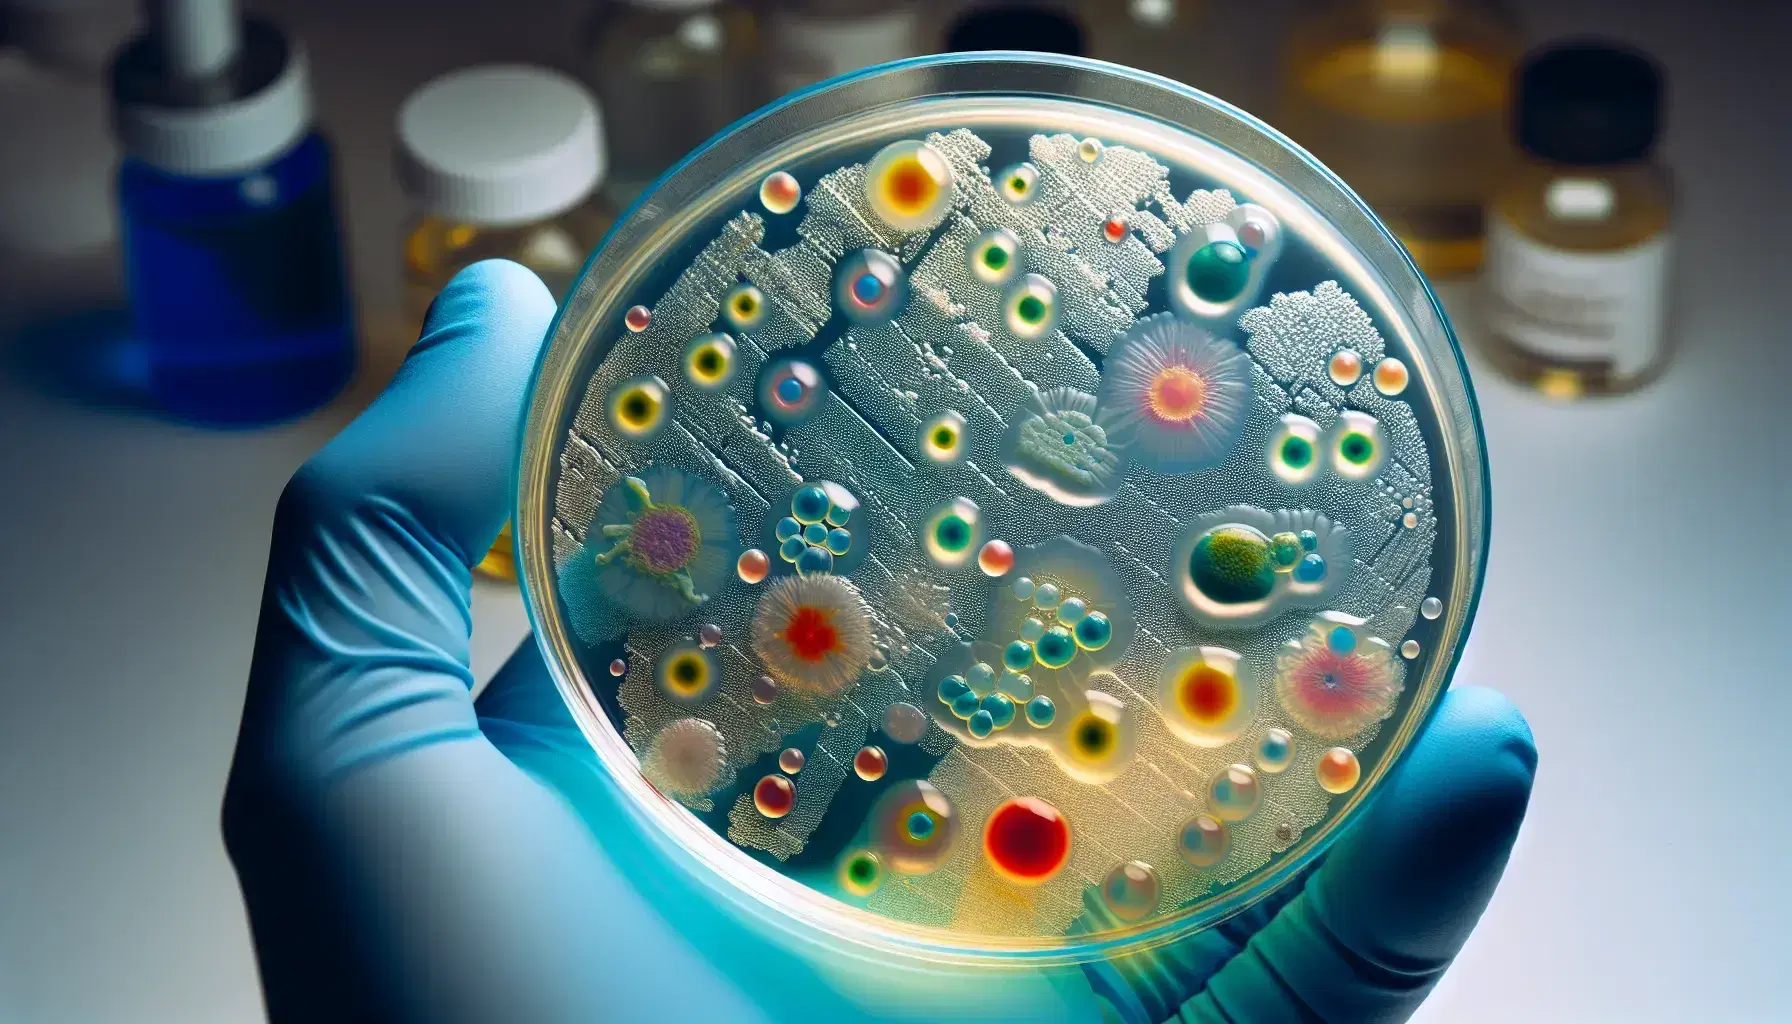 Vista microscópica de colonias de bacterias en un plato de Petri, con manchas irregulares verdes, rojas, amarillas y azules sobre medio de cultivo, sostenido por manos enguantadas en azul claro.